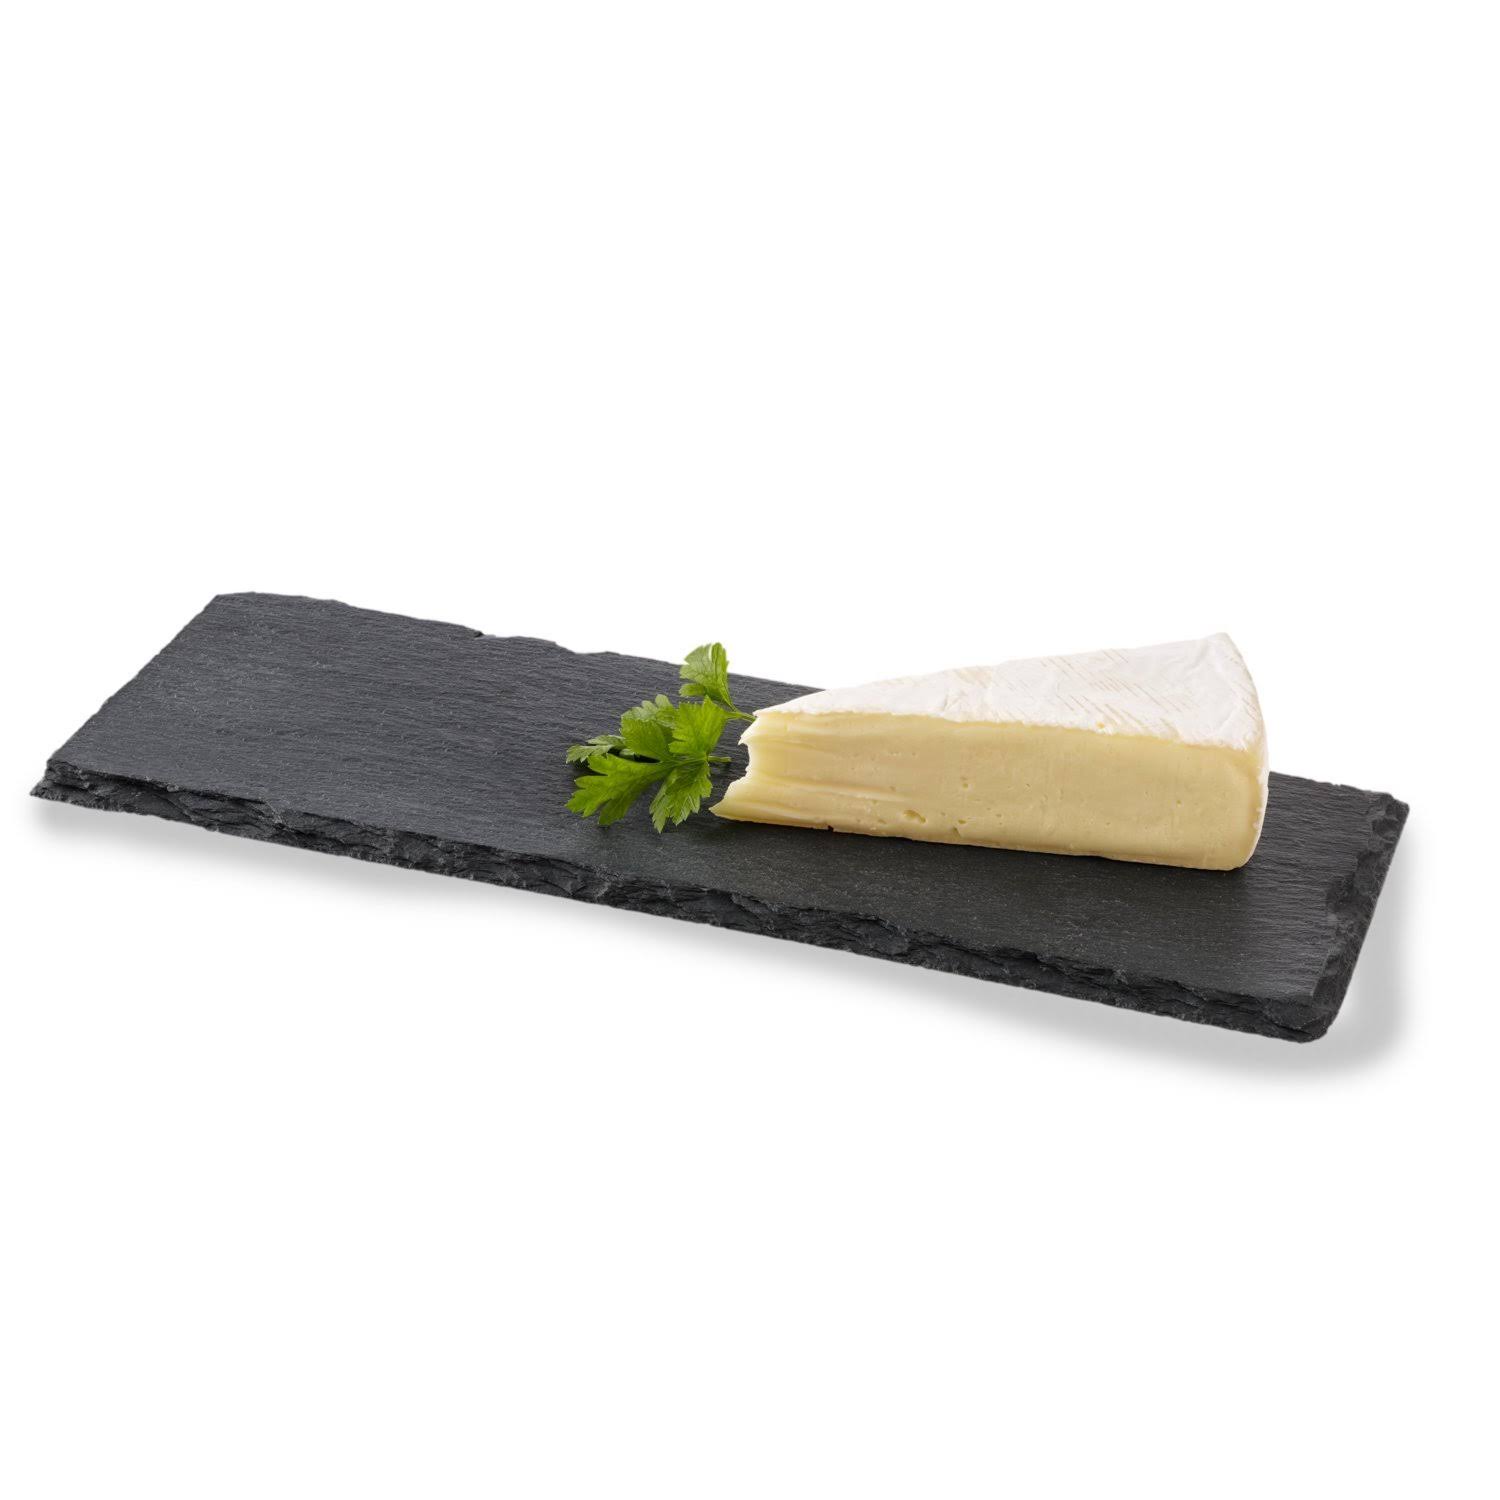 Boska Monaco Slate Cheese Board, Black, Small